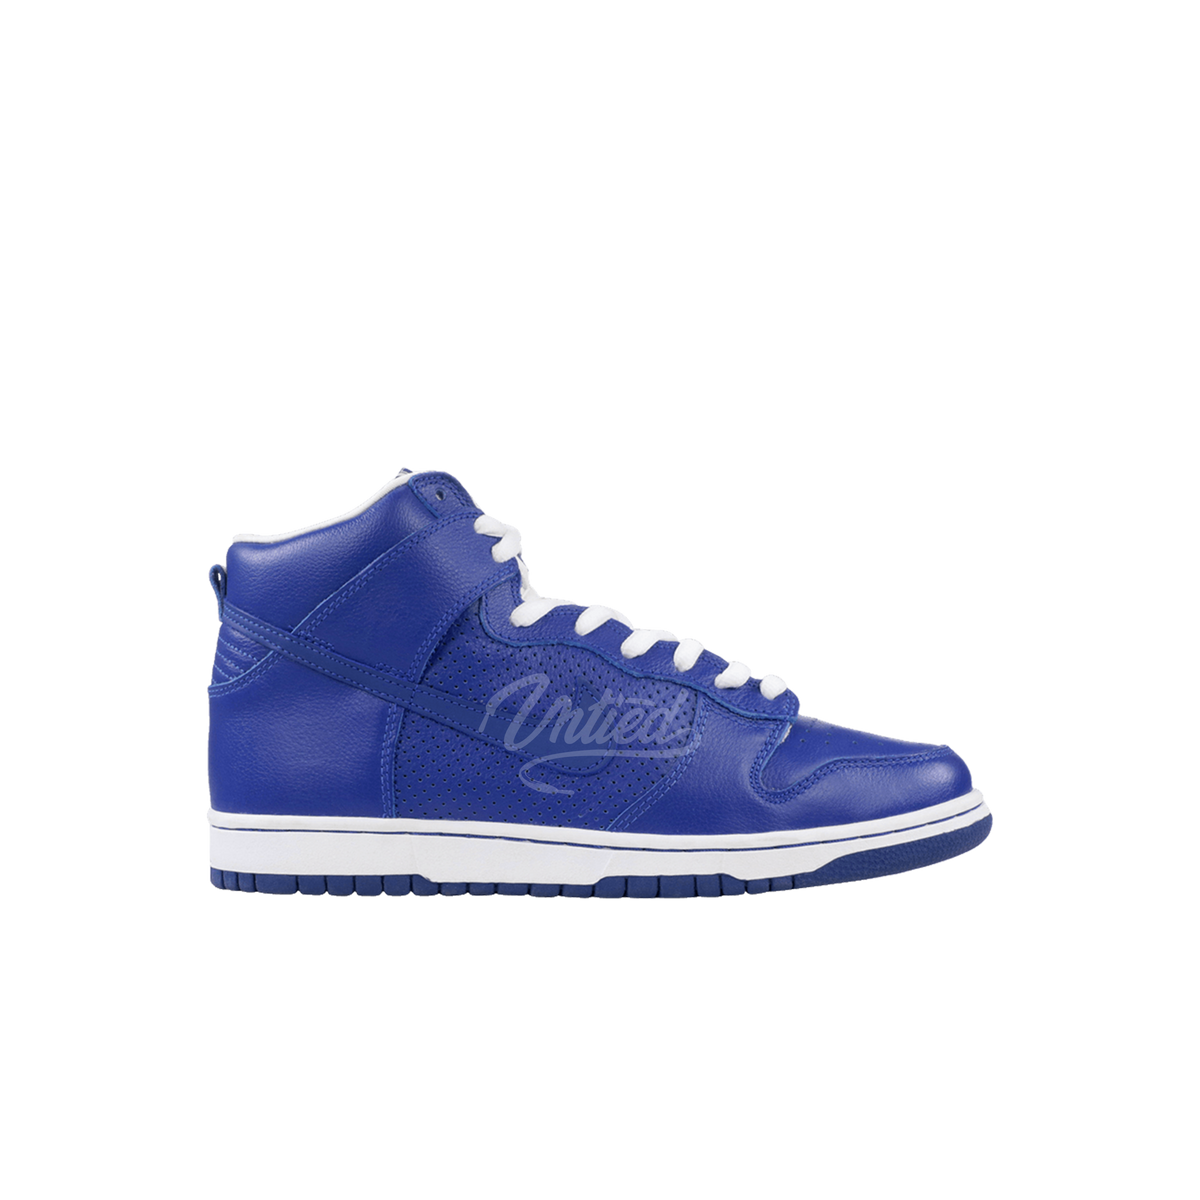 Nike SB Dunk High "T19 Royal Blue"